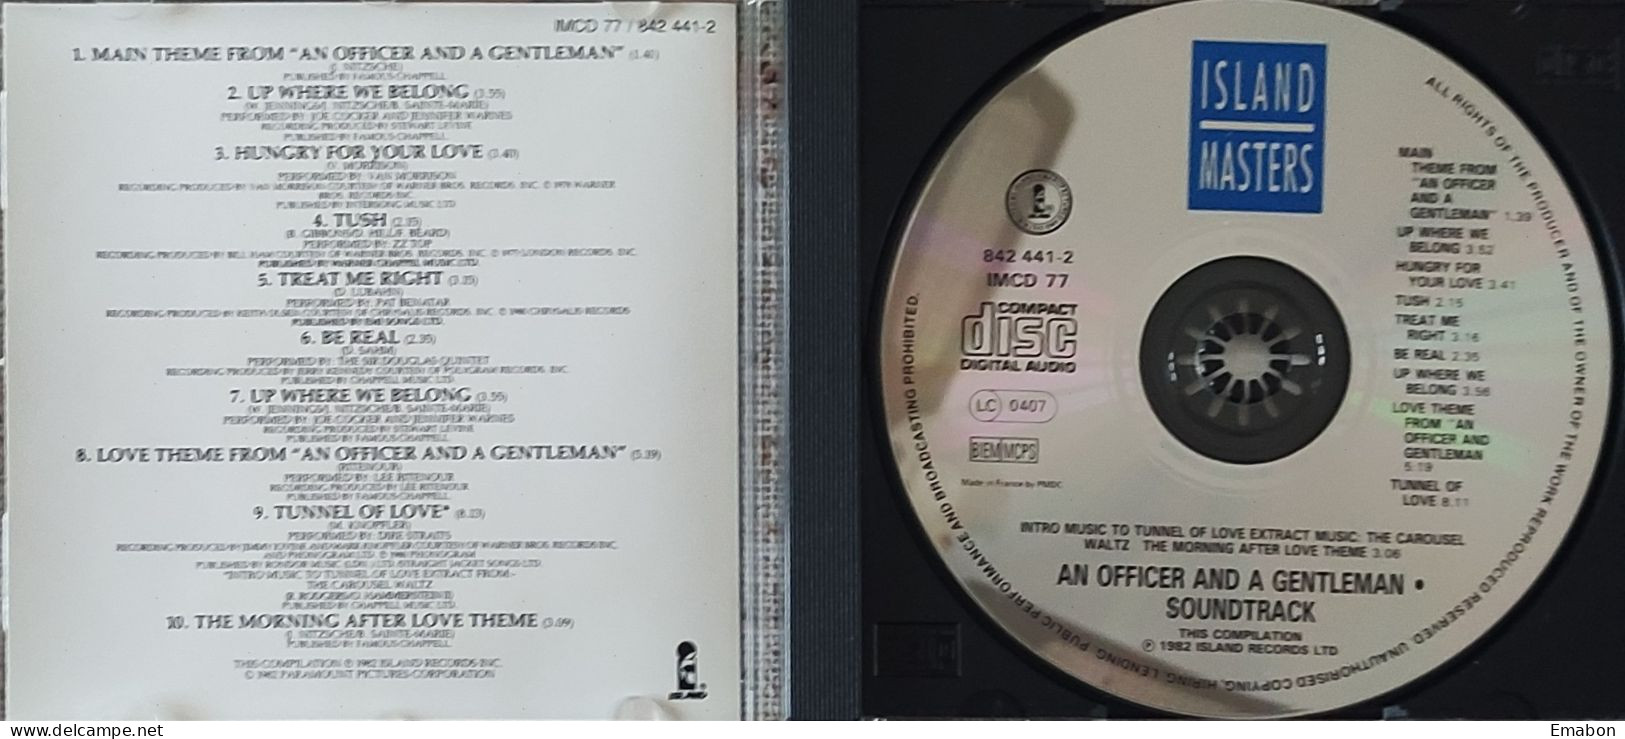 BORGATTA - FILM MUSIC  - Cd  RIDLEY SCOTT - AN OFFICER AND A GENTLEMAN - ISLAND MASTERS 1995 - USATO In Buono Stato - Musica Di Film